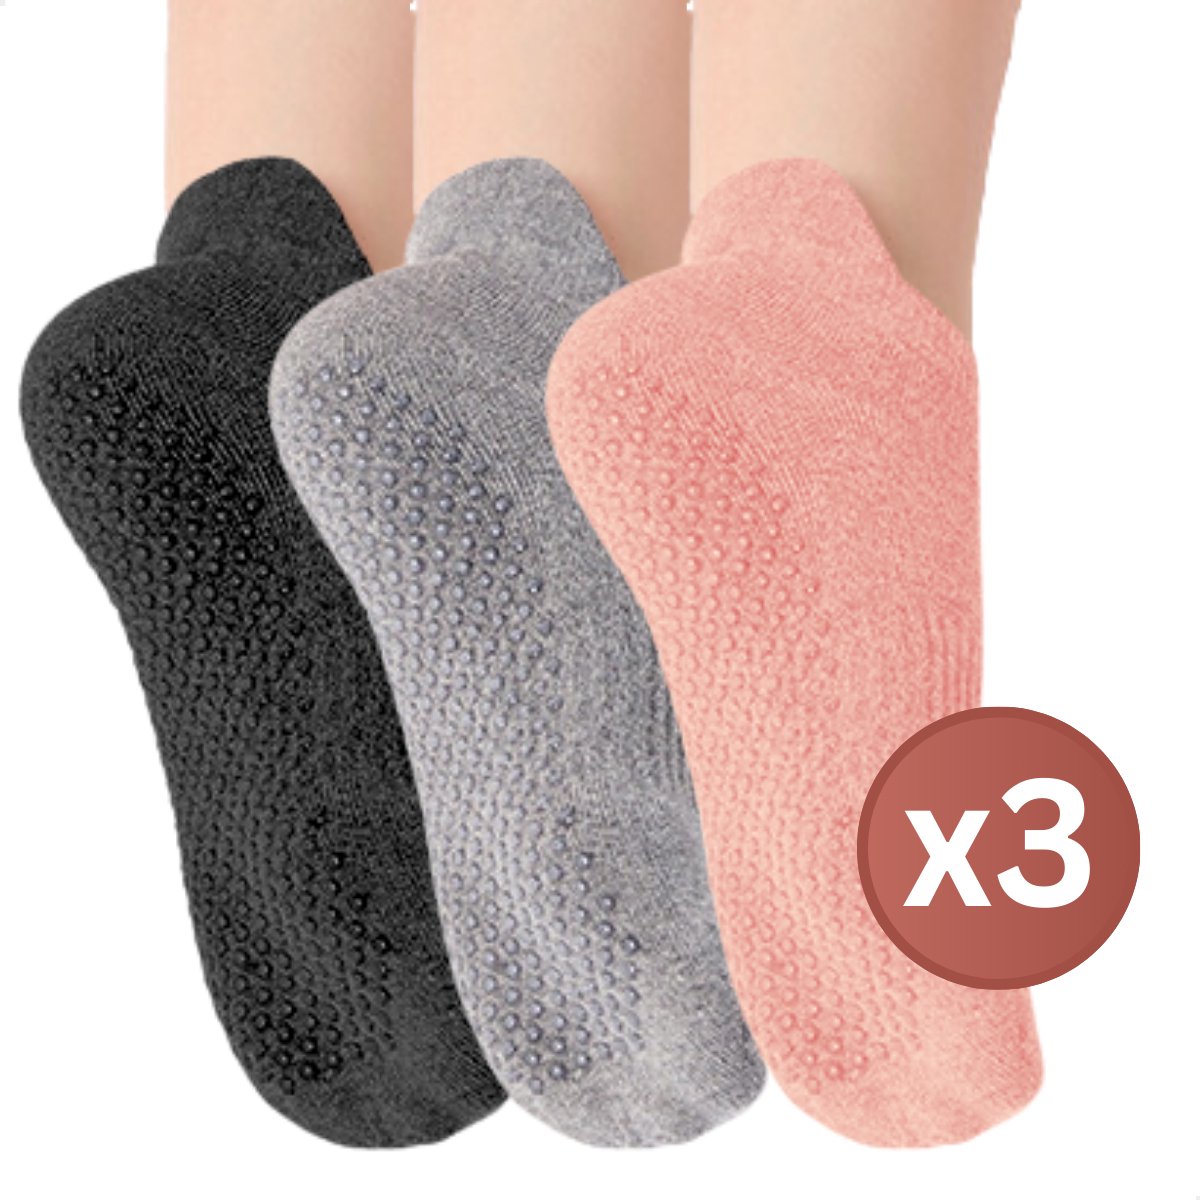 RENALUX - Antislip Sokken Dames - Yoga Sokken - Pilates Sokken - Anti Slip Sokken - Huissokken met Antislip Dames - Roze, Grijs & Zwart - Set van Maarliefst 3 Paar